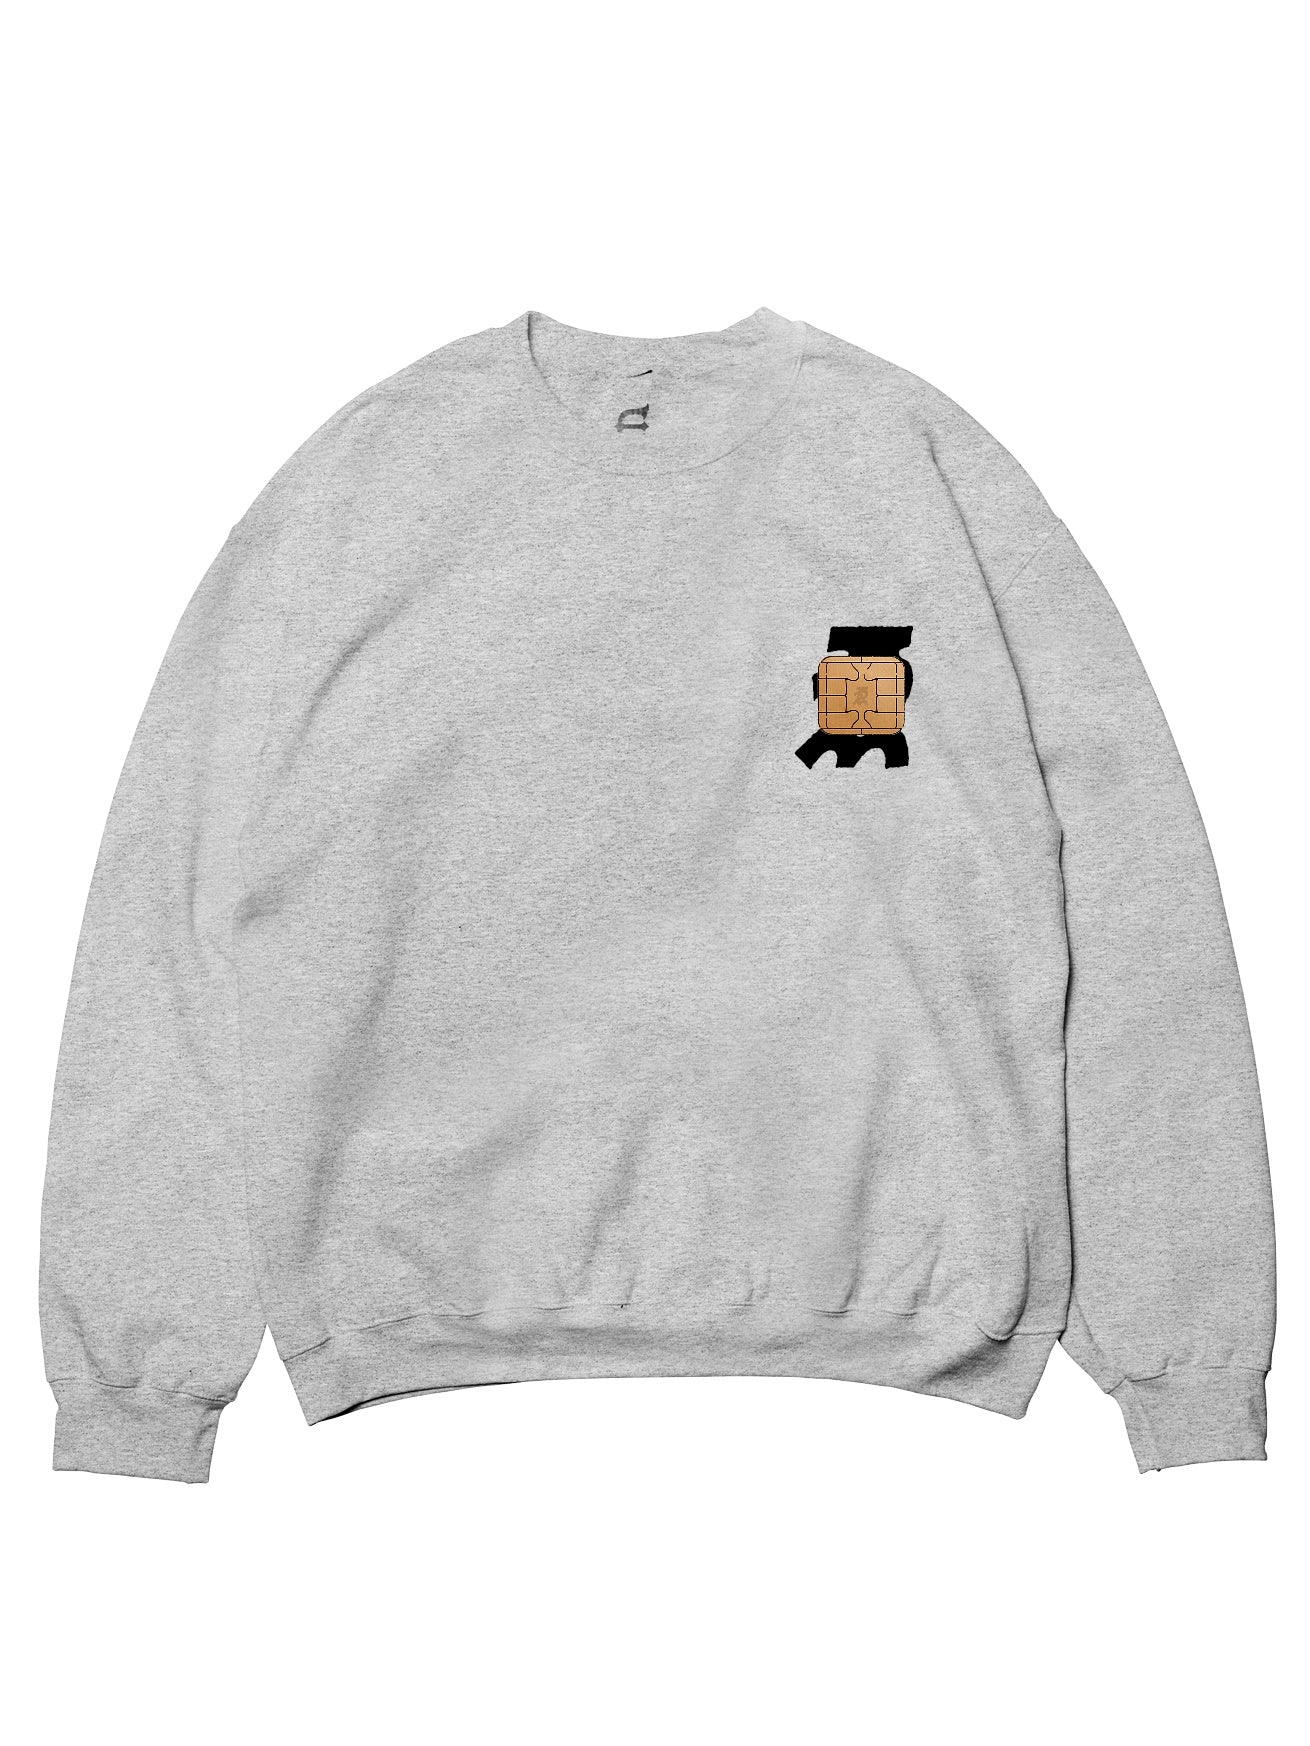 EVISEN WYE Chip Crew Neck Sweater - Grey